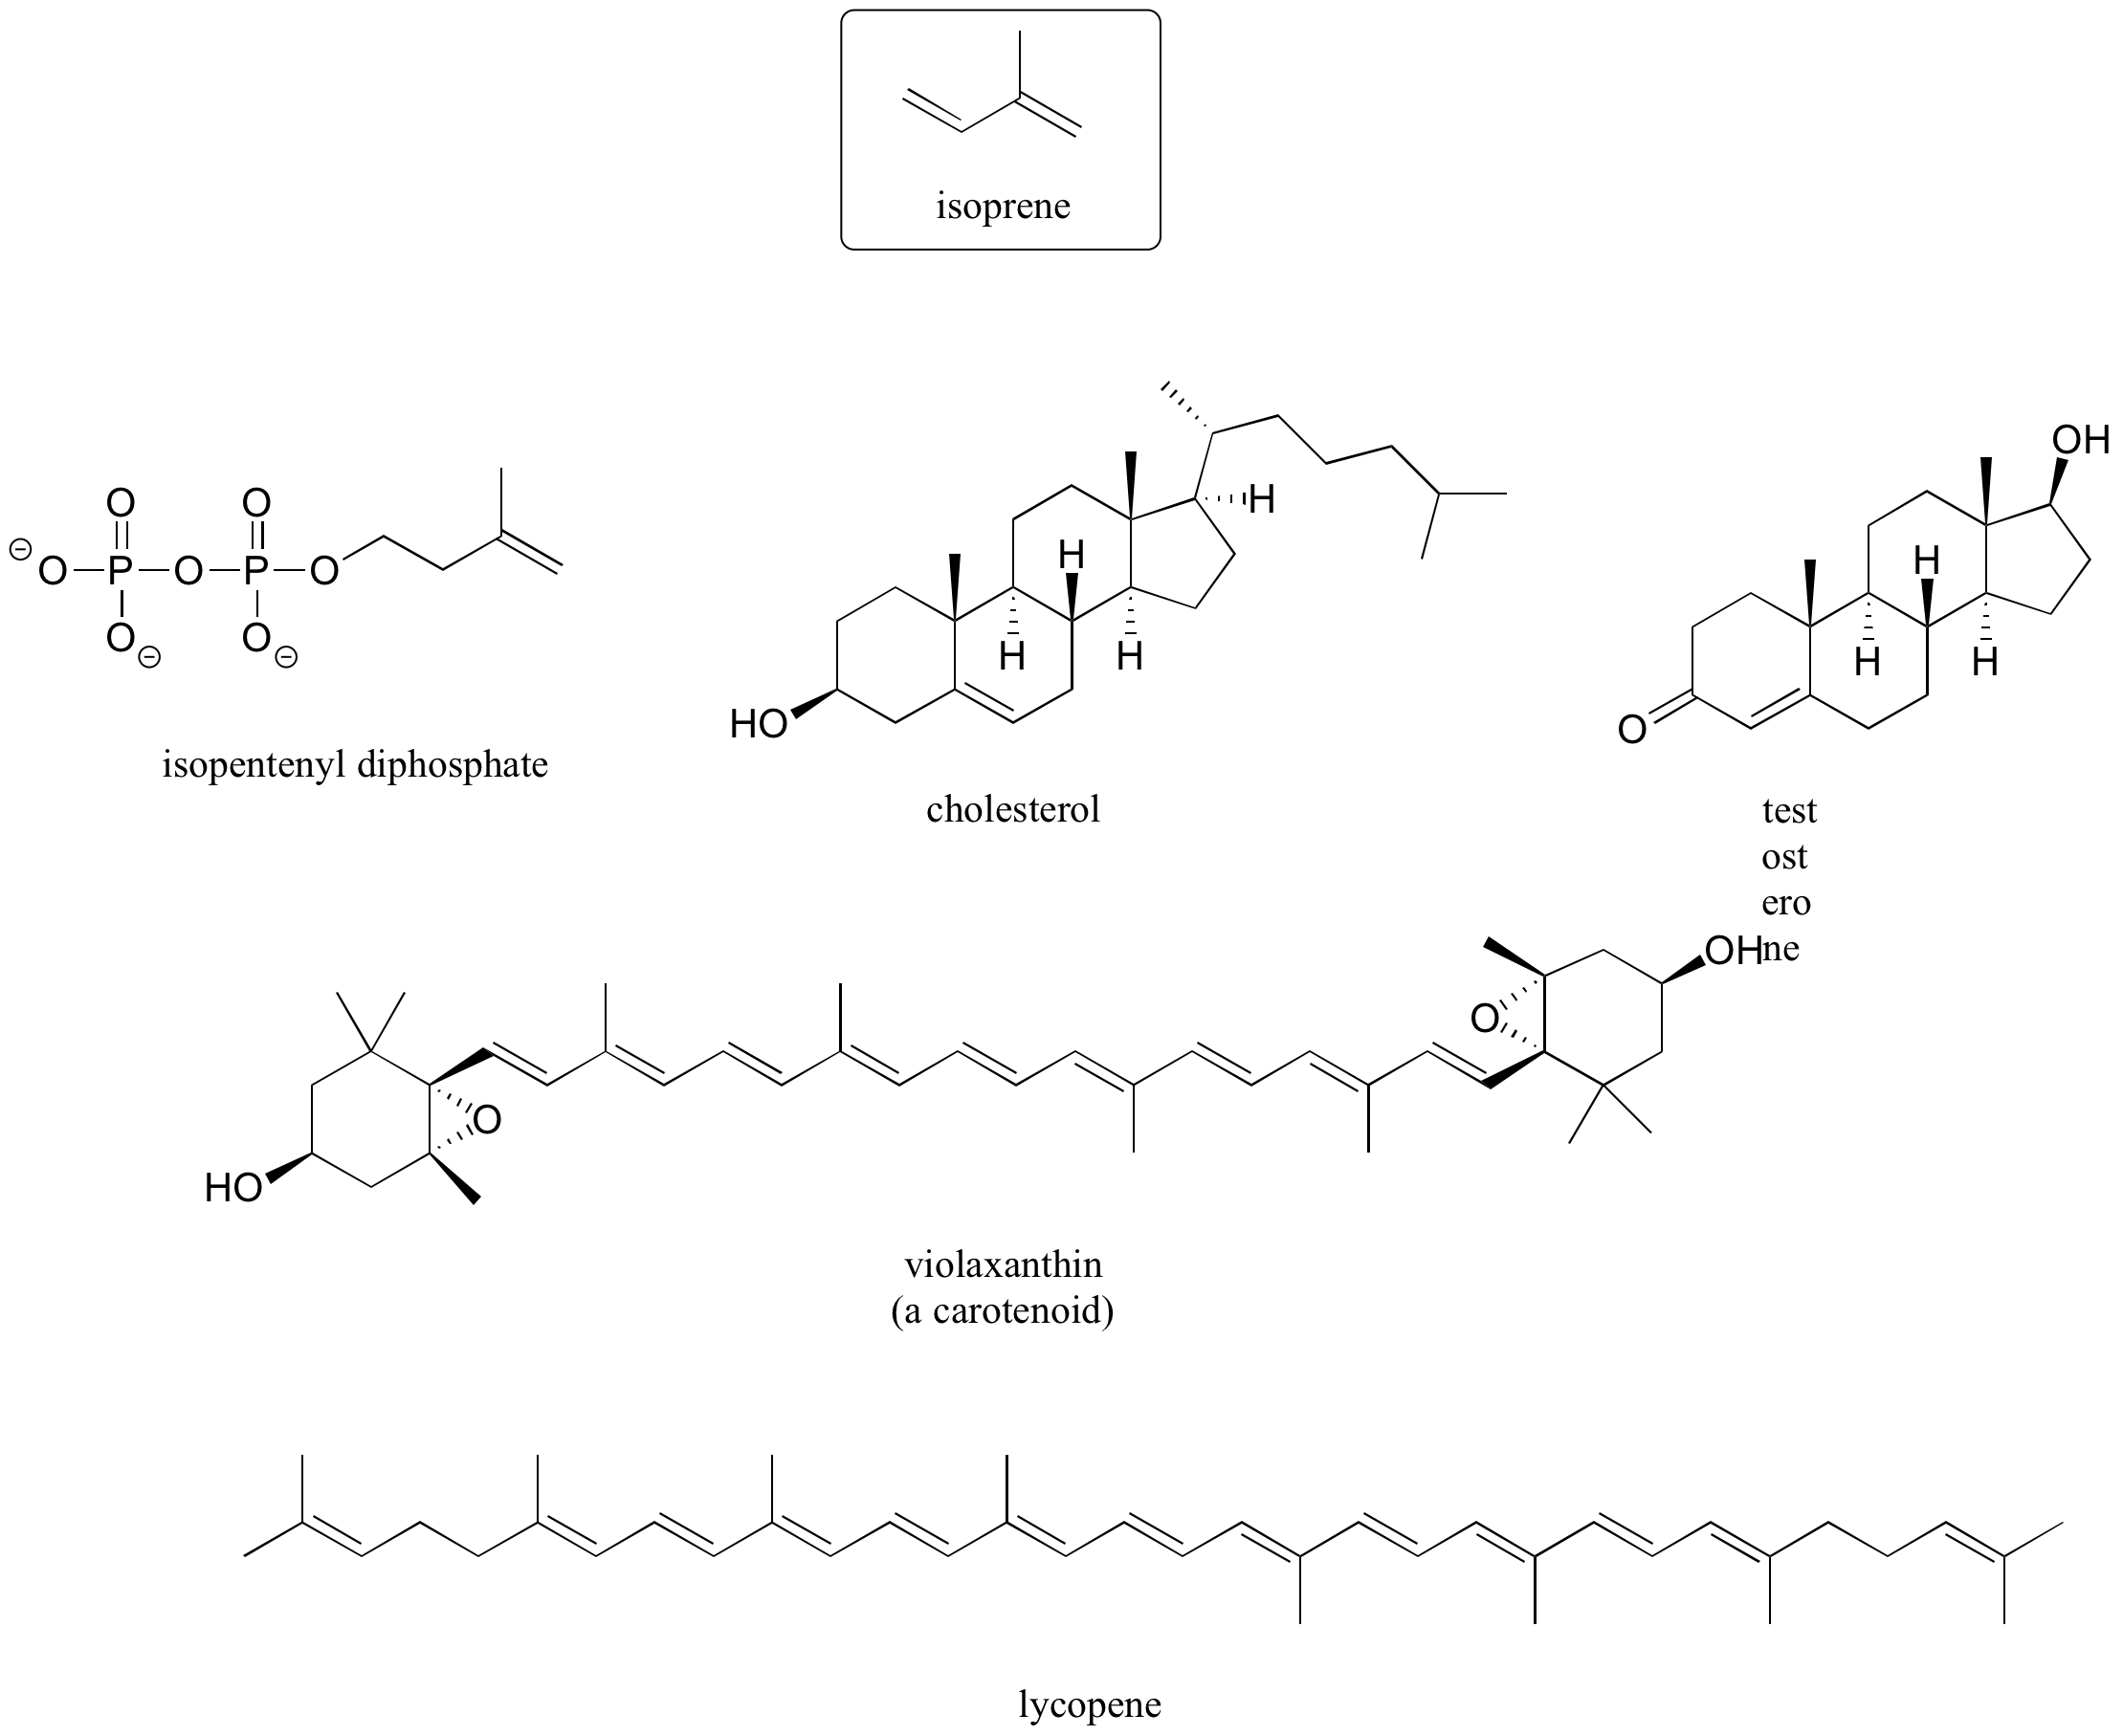 Estructura de isopreno en la parte superior. Fila superior: De izquierda a derecha, difosfato de isopentenilo, colesterol, testosterona. Fila media: violaxantina, un carotenoide. Fila inferior: licopeno.